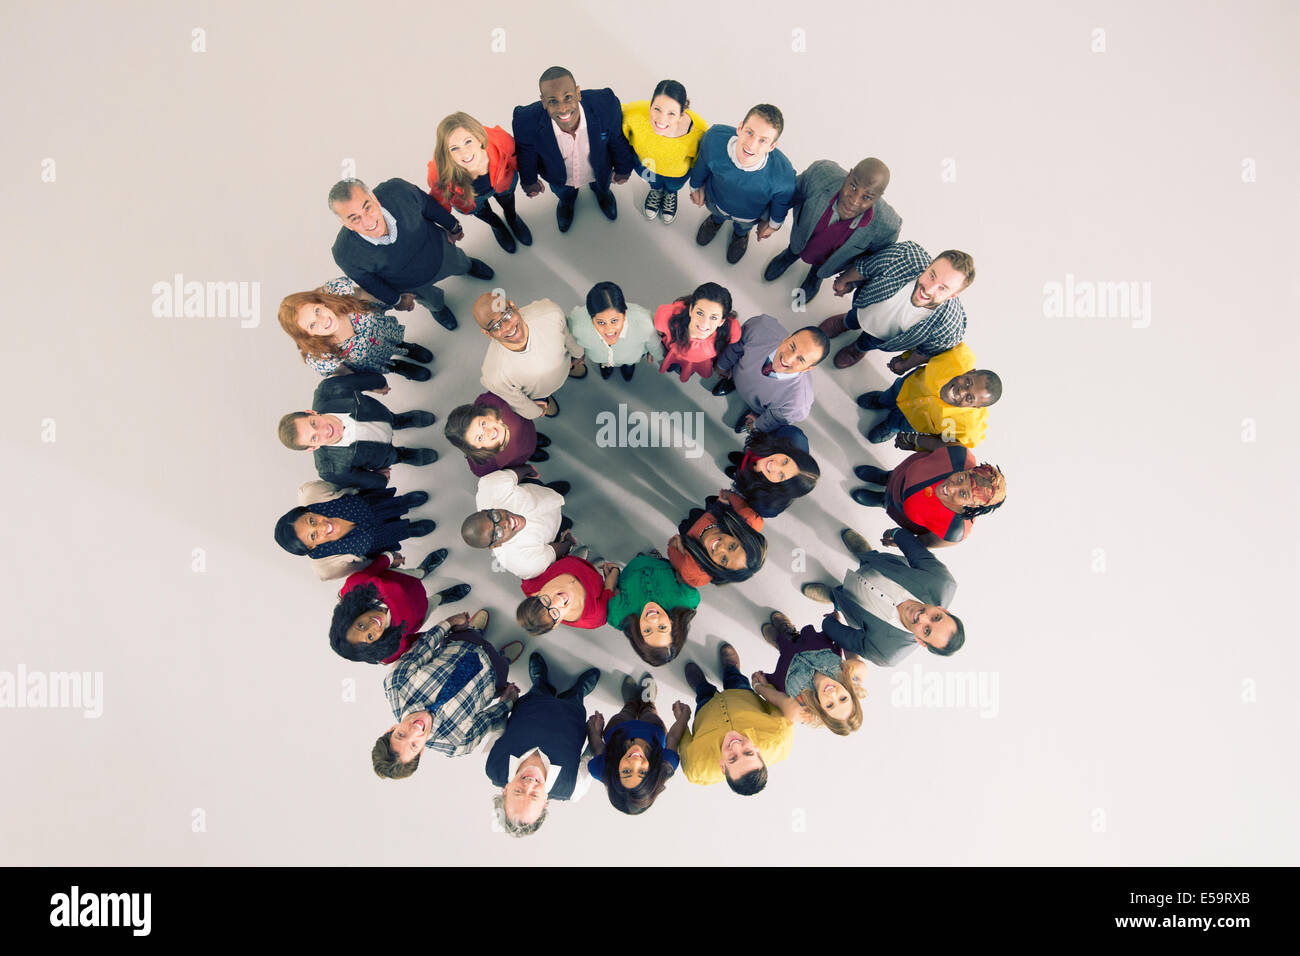 Ritratto di folla variegata in huddle Foto Stock